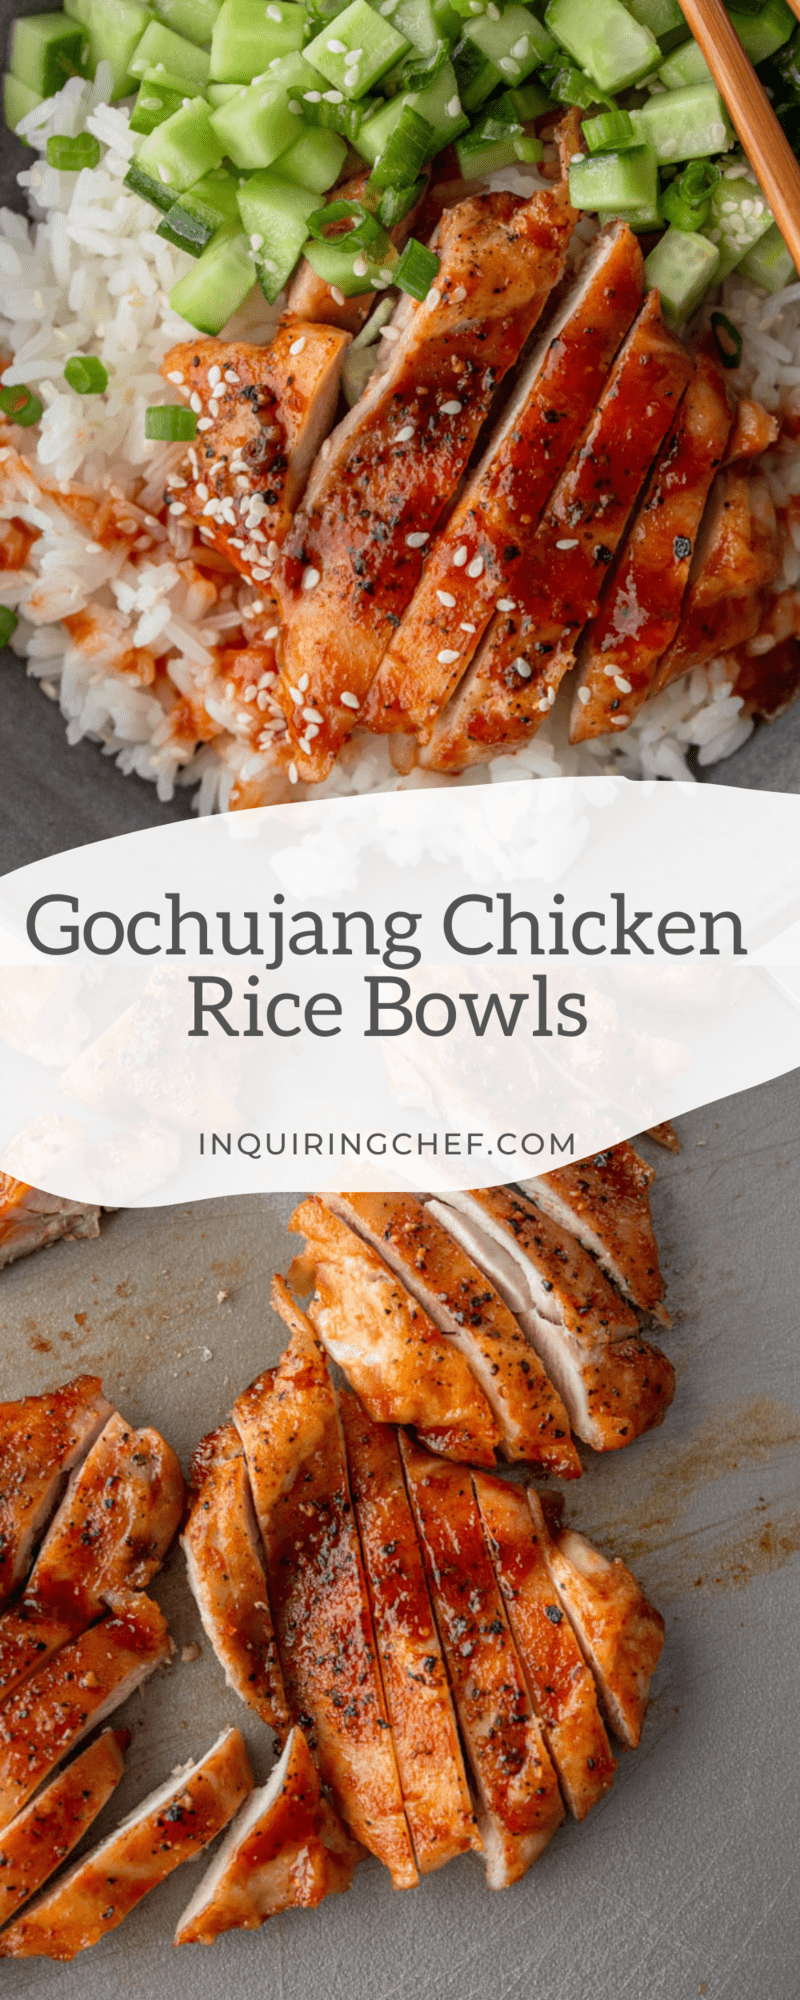 gochujang chicken rice bowls